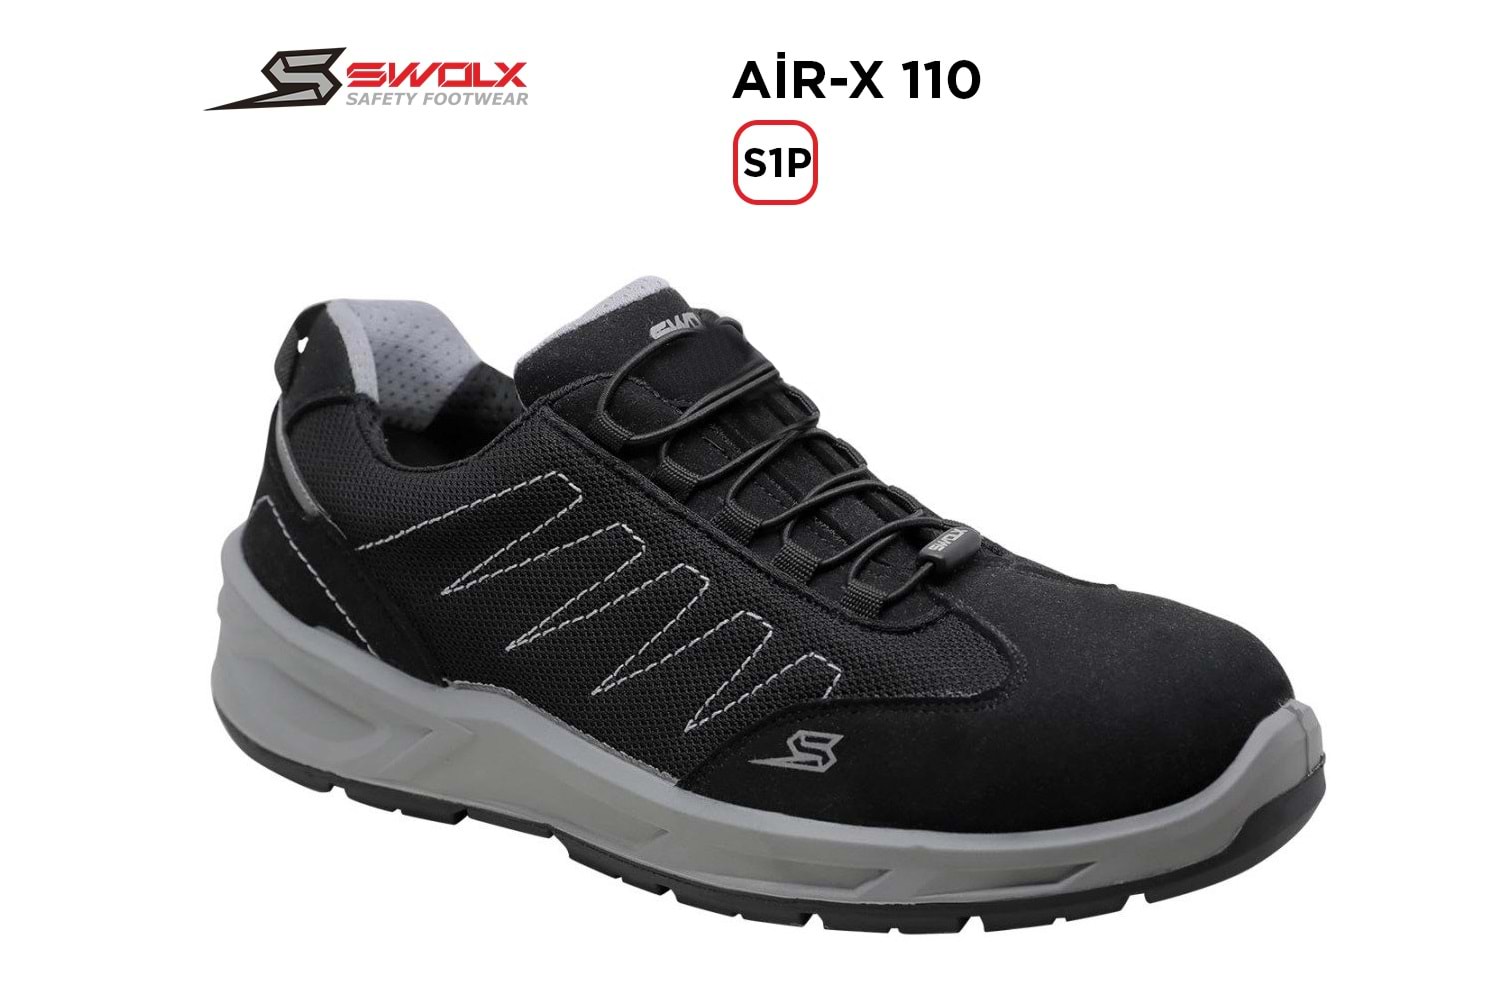 Swolx İş Ayakkabısı - Air-X Standart Bağcık 110 S1P - 40